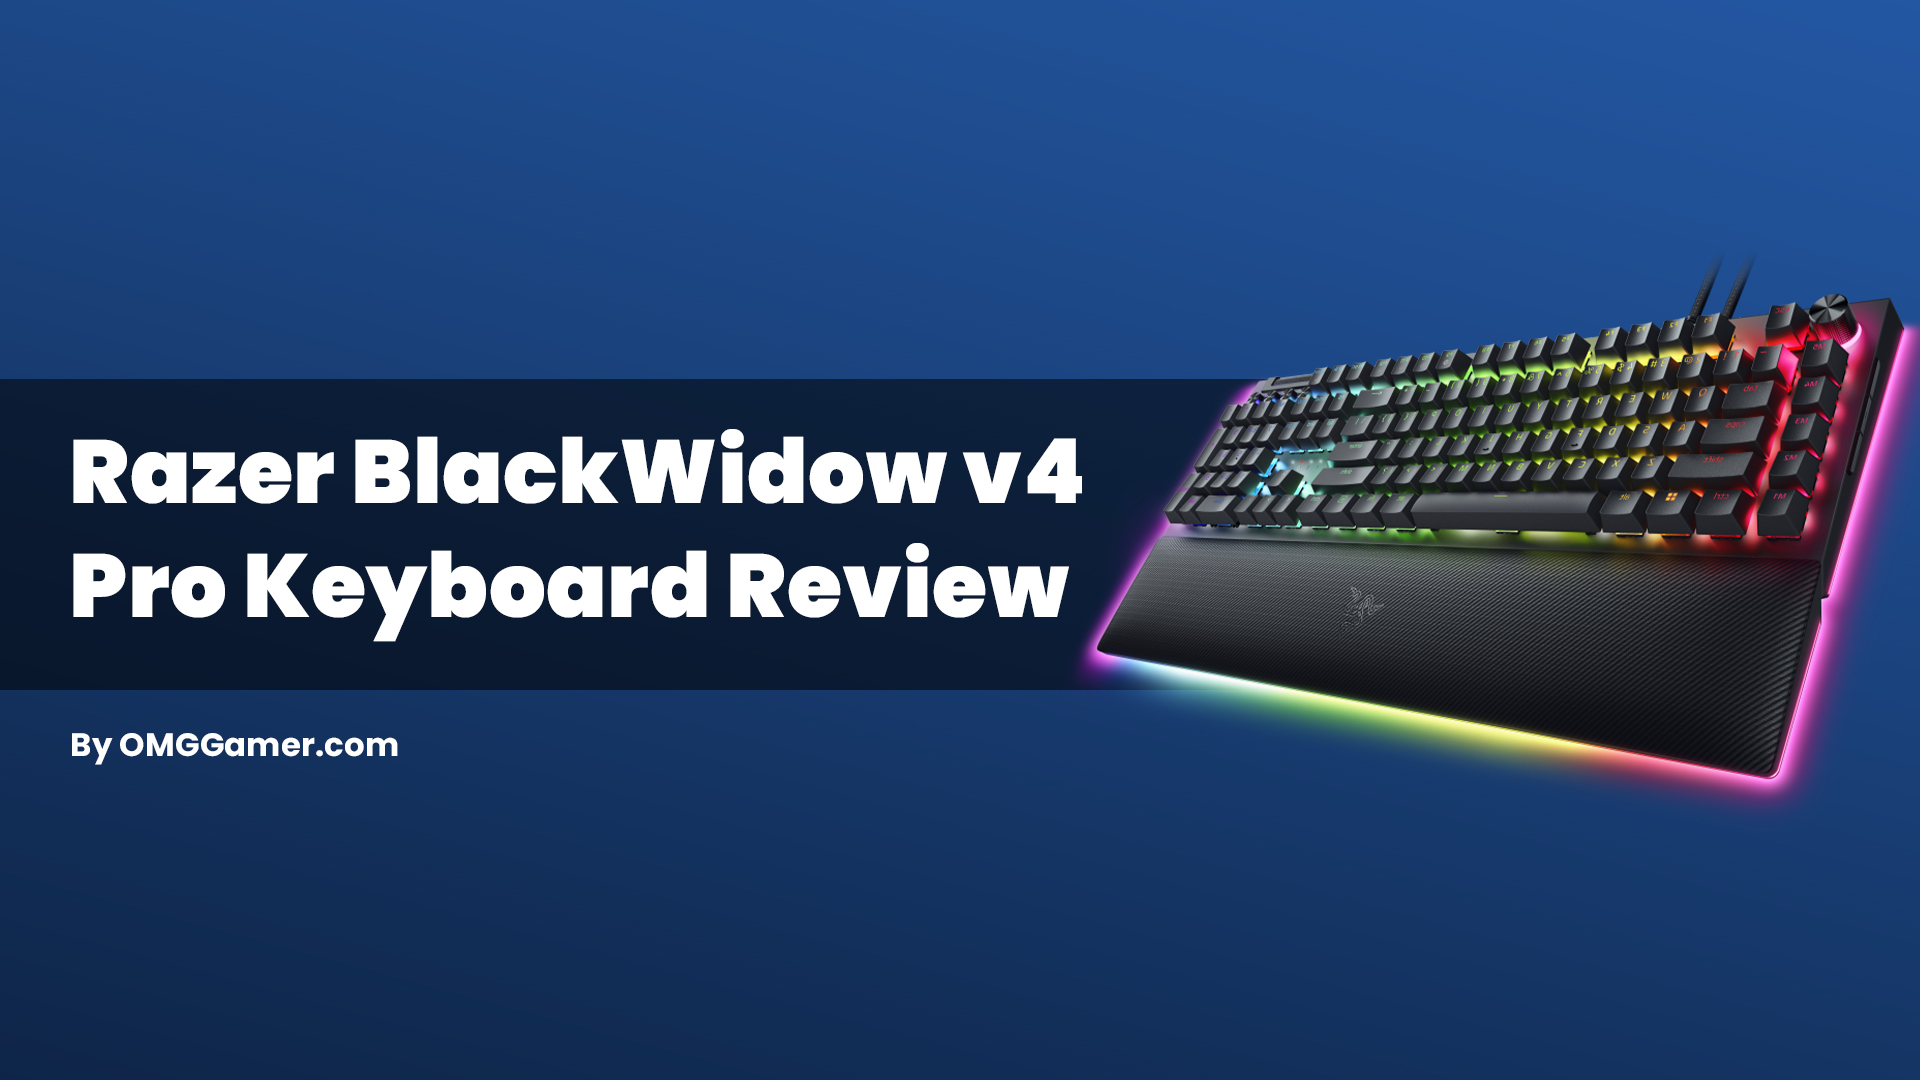 Razer BlackWidow v4 Pro Keyboard Review